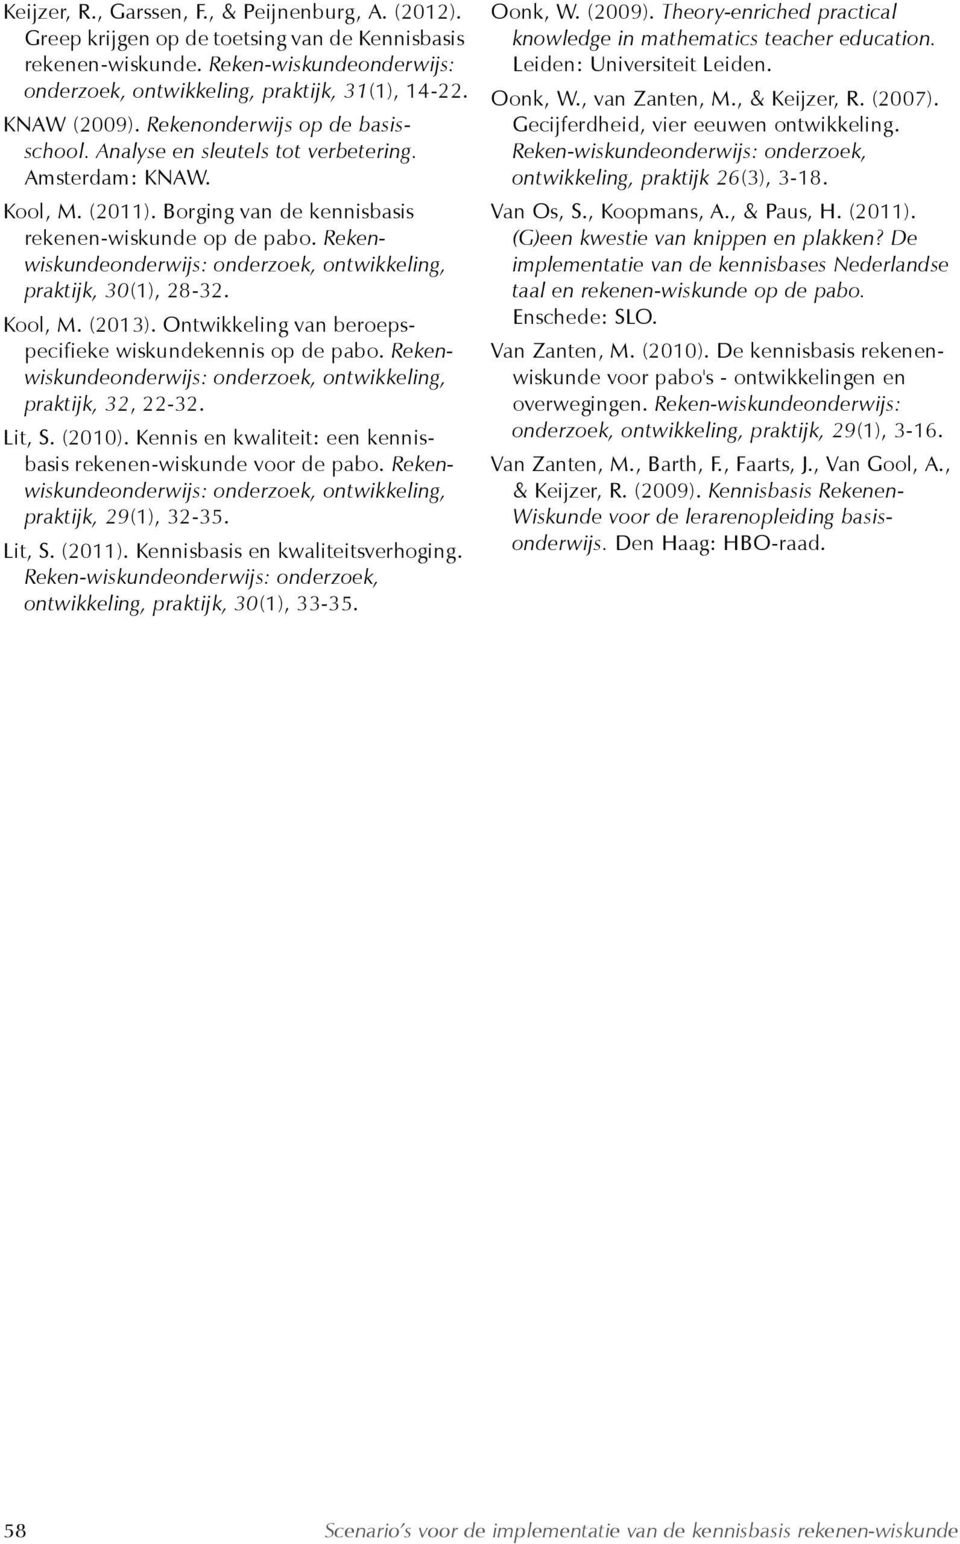 Rekenwiskundeonderwijs: onderzoek, ontwikkeling, praktijk, 30(1), 28-32. Kool, M. (2013). Ontwikkeling van beroepspecifieke wiskundekennis op de pabo.